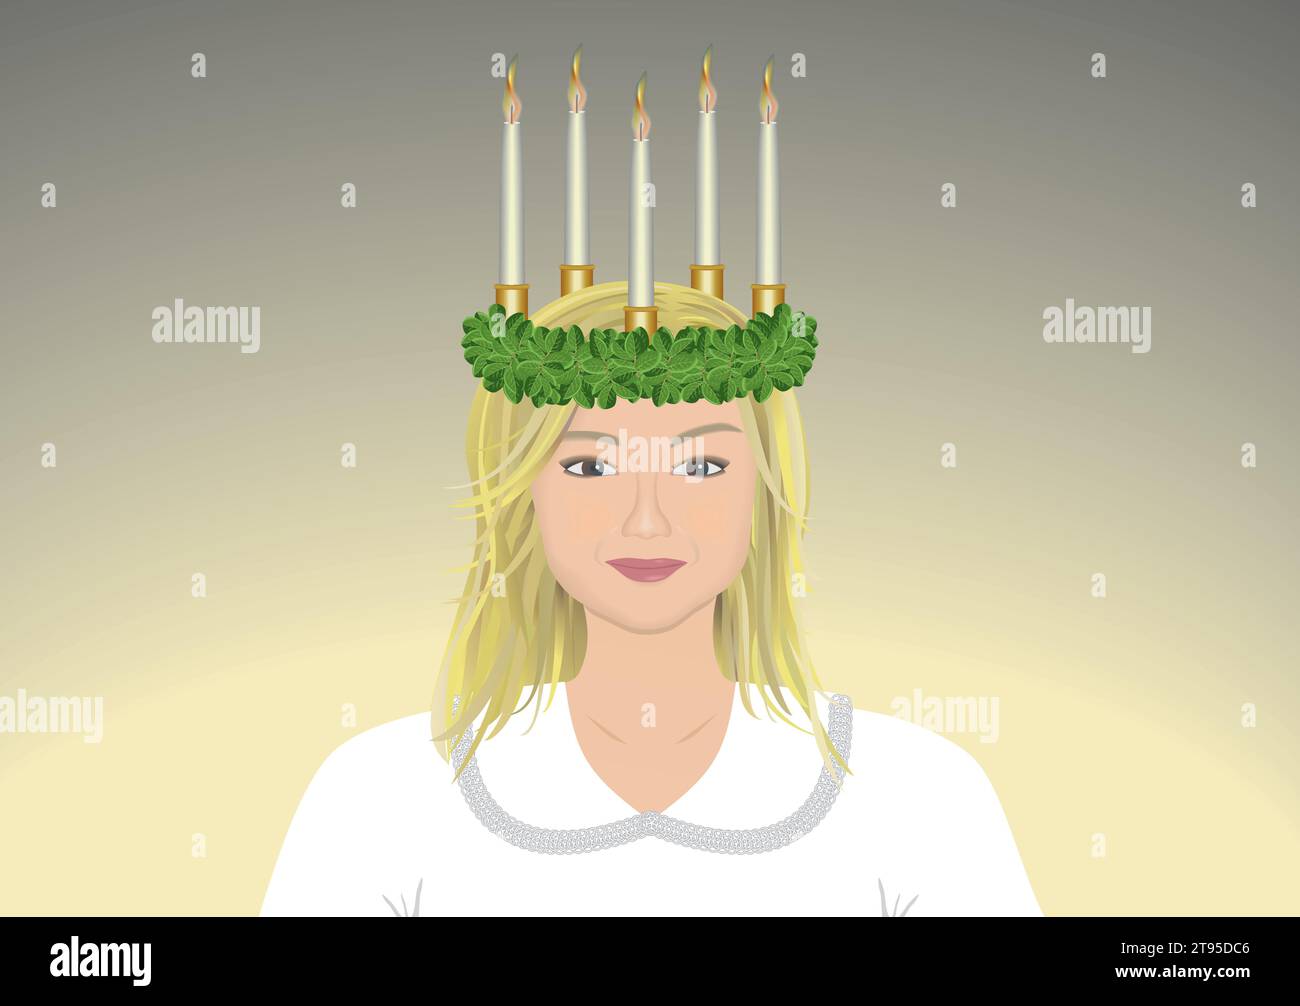 Graziosa ragazza santa lucia con corona e candele tradizionali nella sua hari. Illustrazione vettoriale. Illustrazione Vettoriale